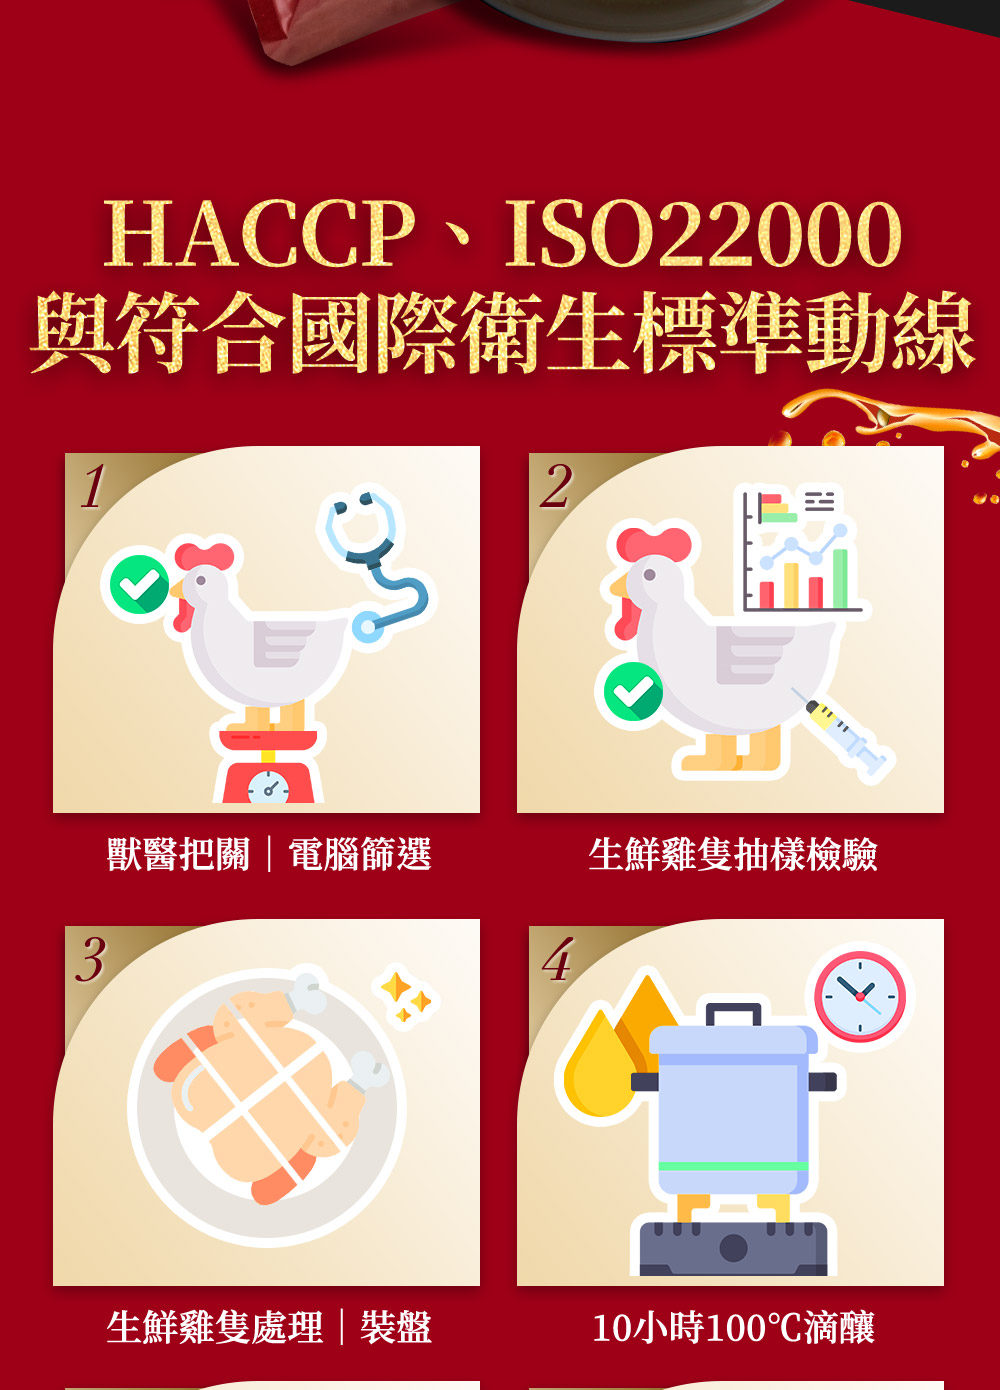 HACCP、ISO22000，與符合國際衛生標準動線，獸醫把關電腦篩選，生鮮雞隻處理裝盤，生鮮雞隻抽樣檢驗，10小時100℃滴釀。